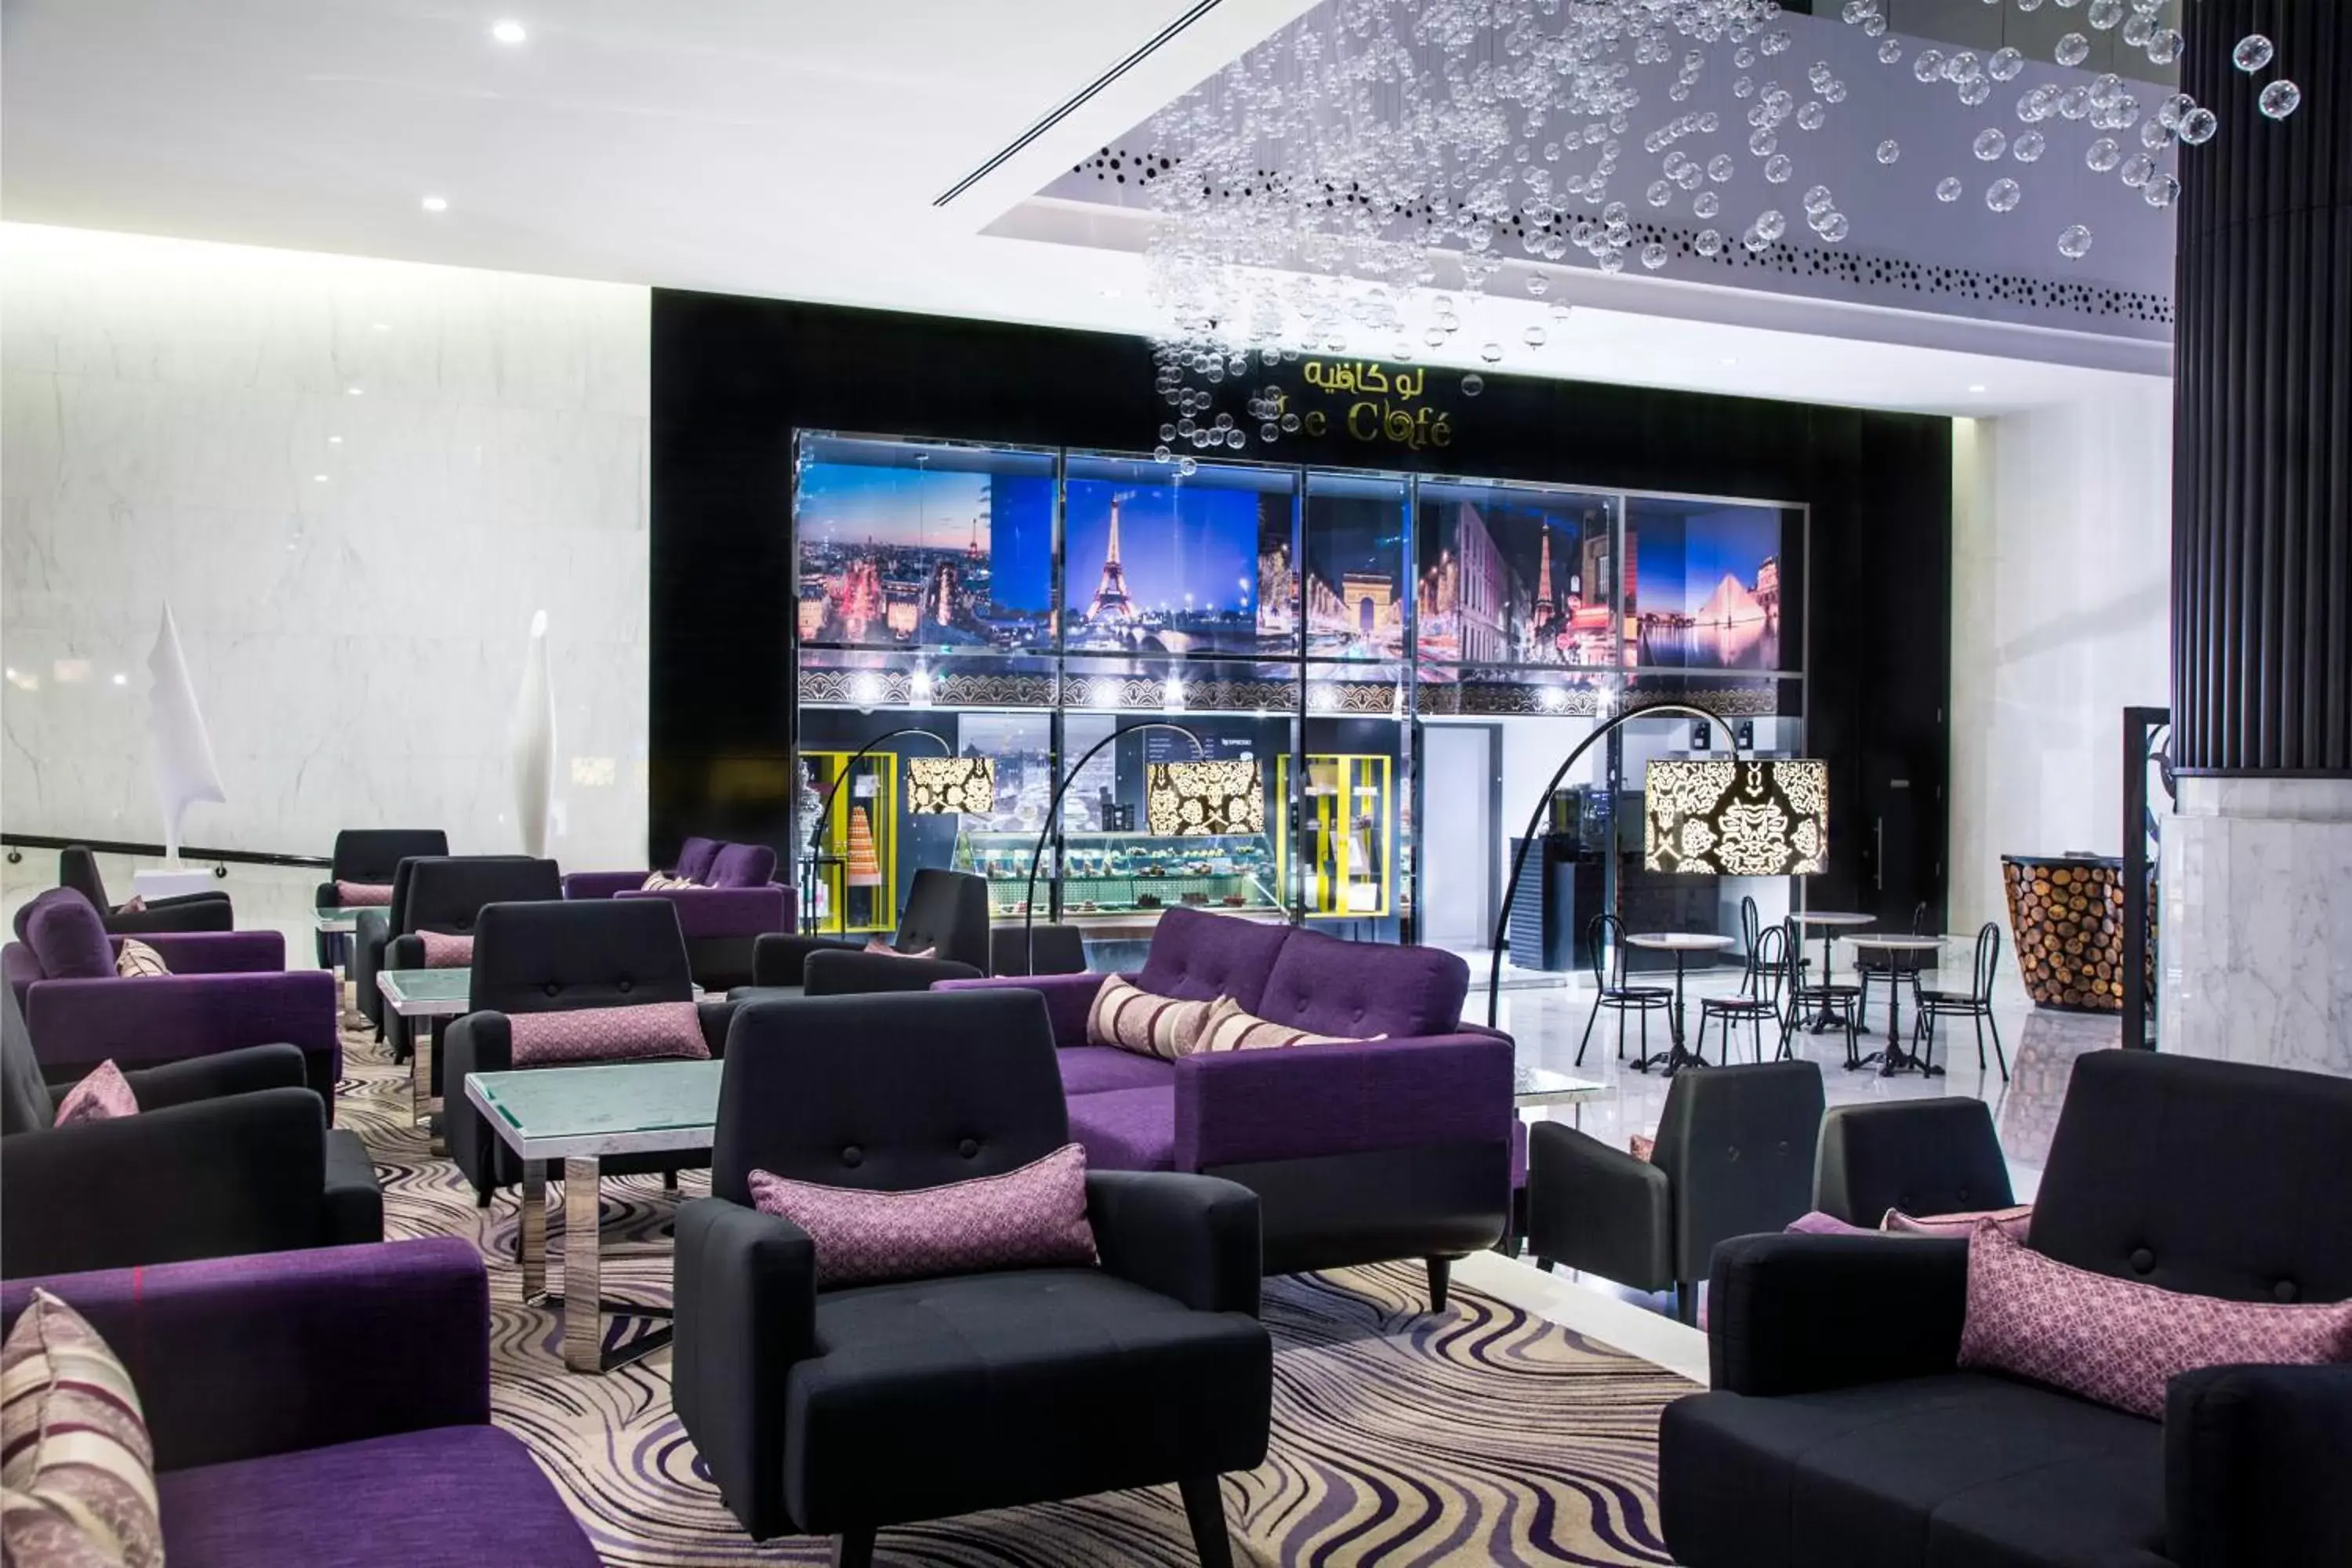 Lobby or reception in Sofitel Abu Dhabi Corniche